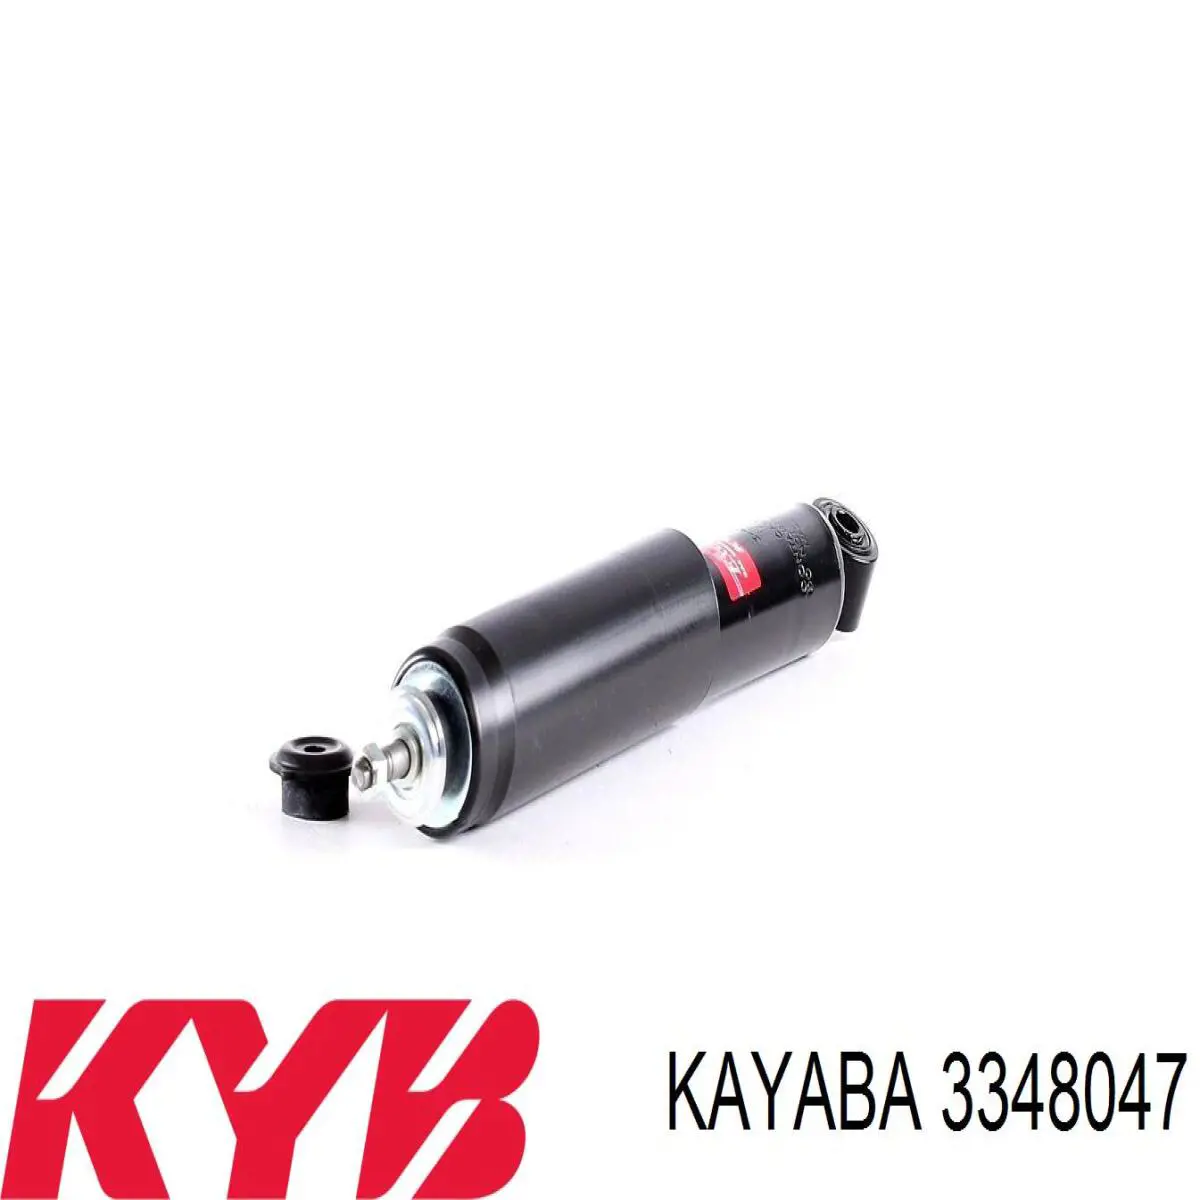 3348047 Kayaba амортизатор передний правый